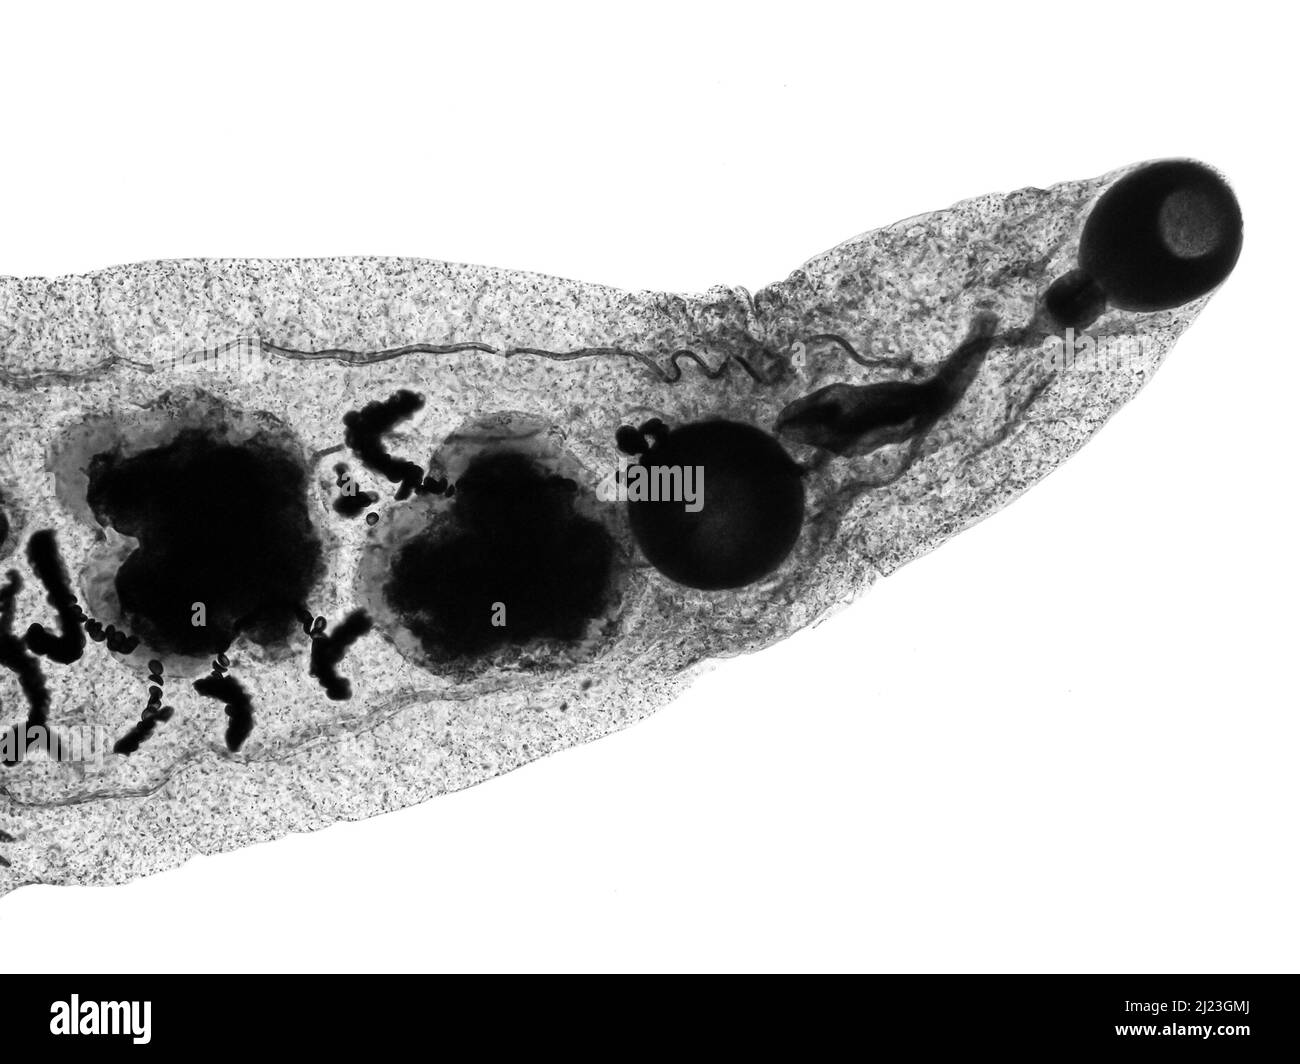 Parasitic worm. Mature Lancet liver fluke (Dicrocoelium dendriticum) under microscope. Oral sucker, ventral sucker. Stock Photo